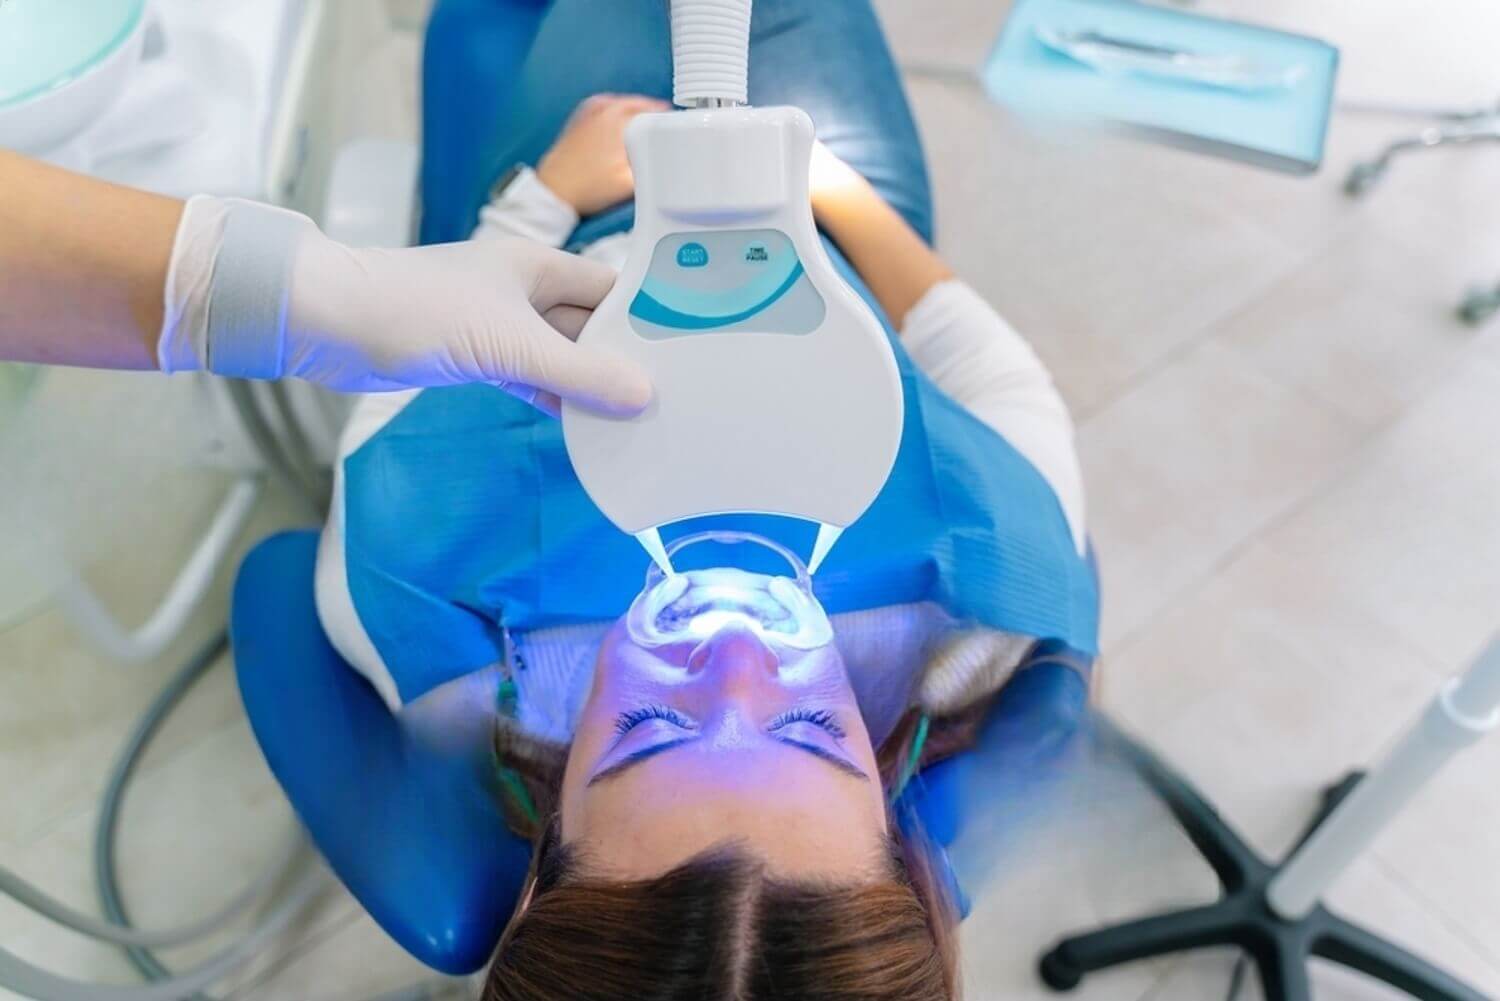 Sbiancamento dentale: Professionale vs Fai da te